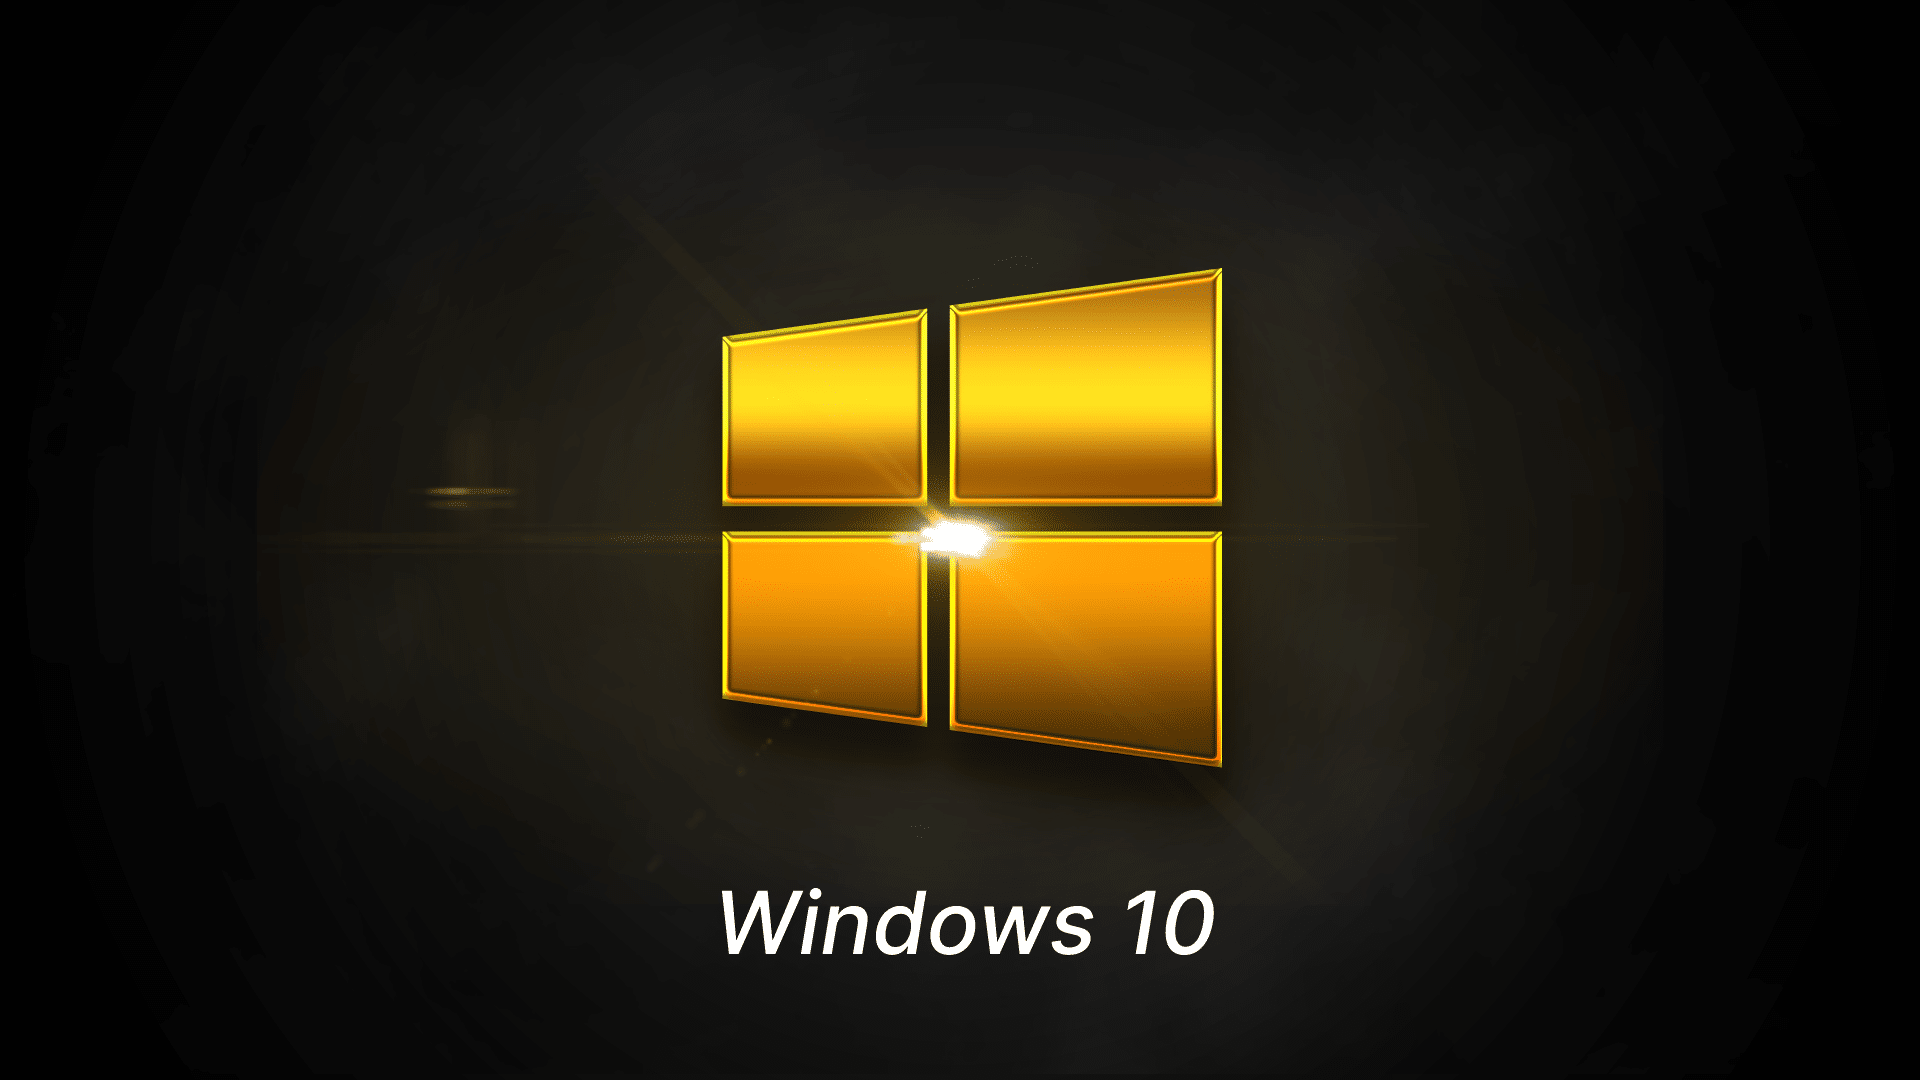 Jusqu'à 600 euros de promo sur ce PC Microsoft Windows 11